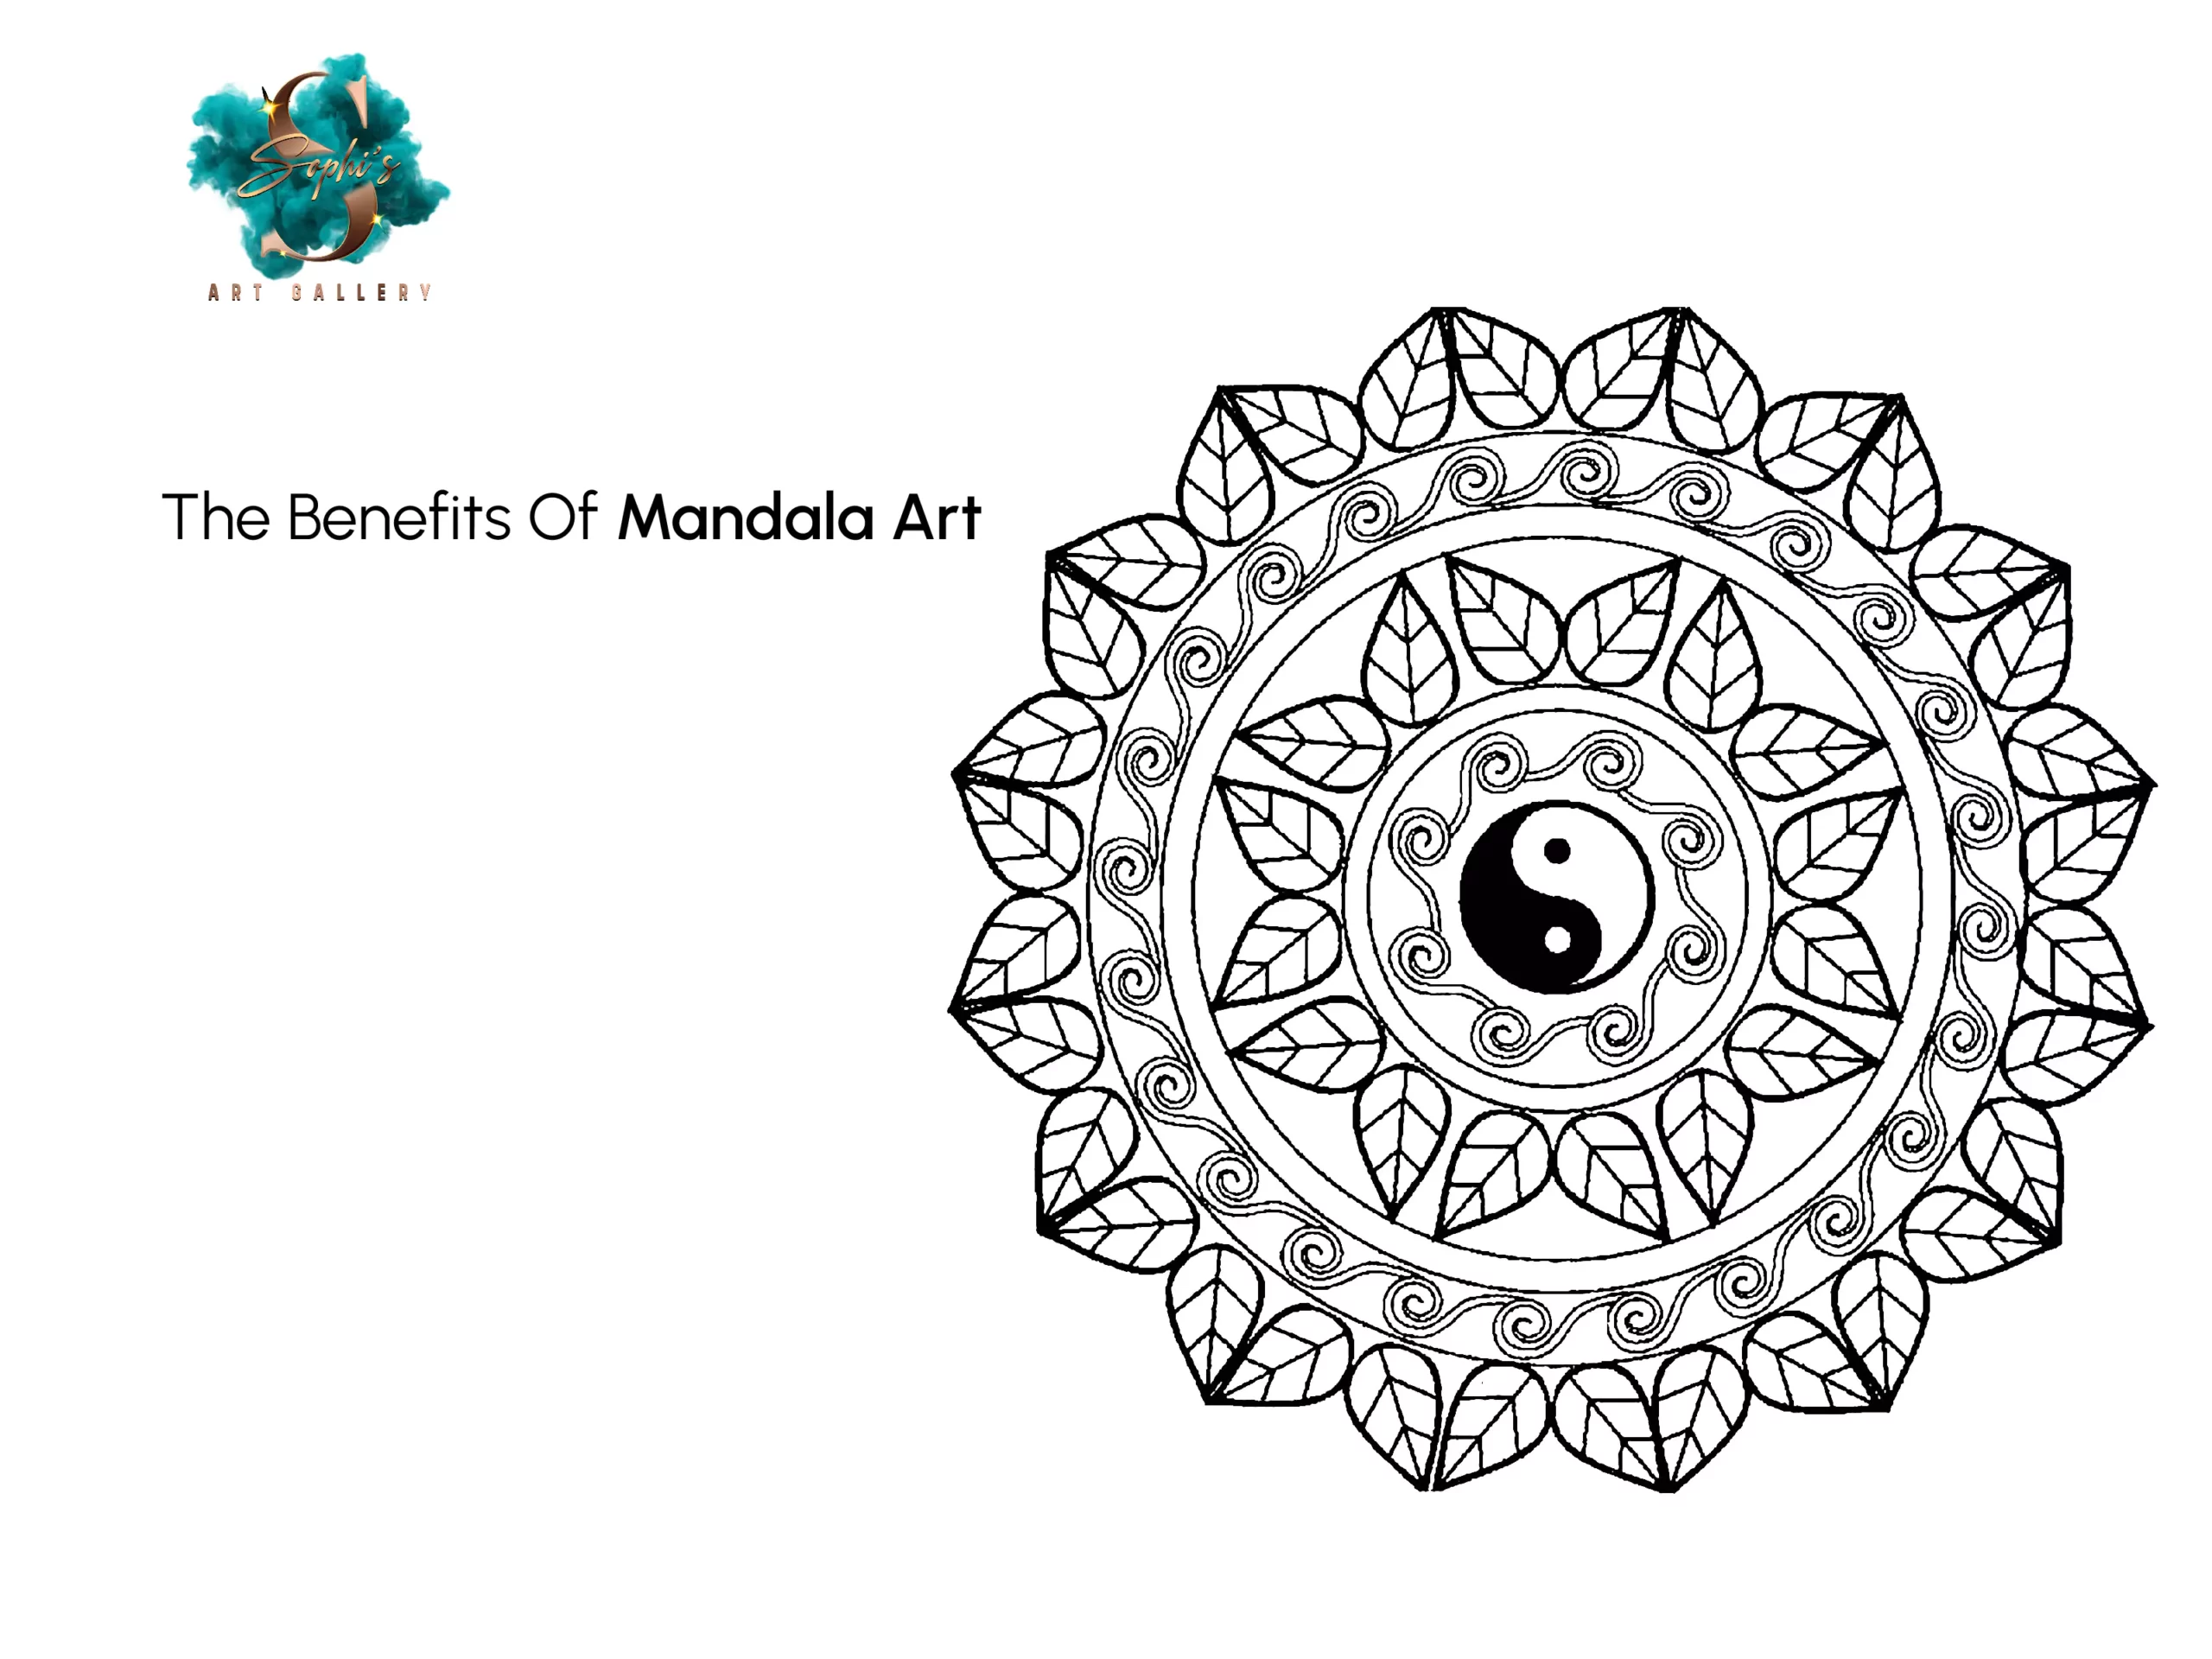 The Benefits Of Mandala Art